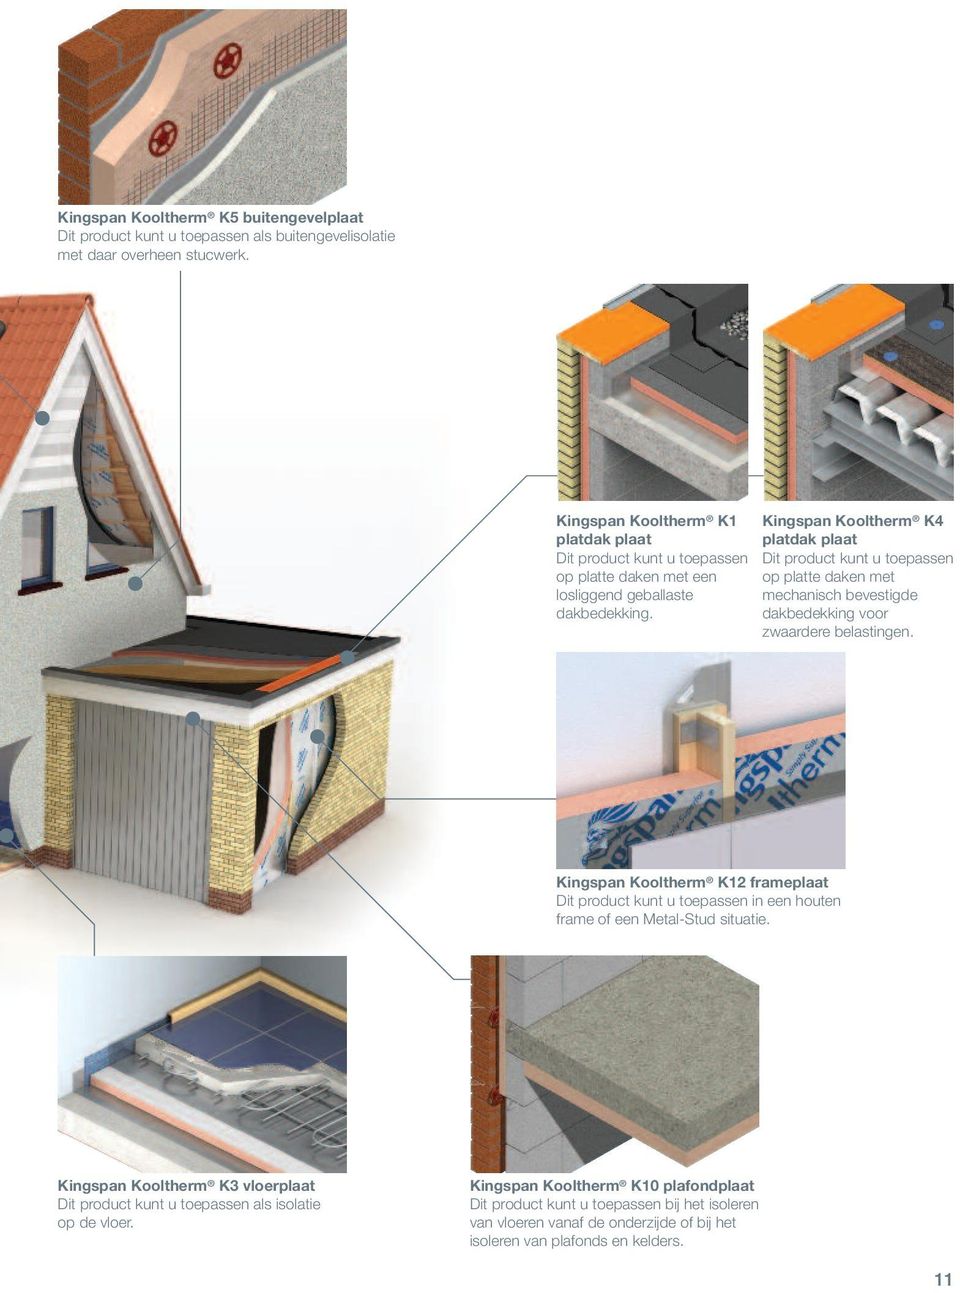 Kingspan Kooltherm K4 platdak plaat Dit product kunt u toepassen op platte daken met mechanisch bevestigde dakbedekking voor zwaardere belastingen.